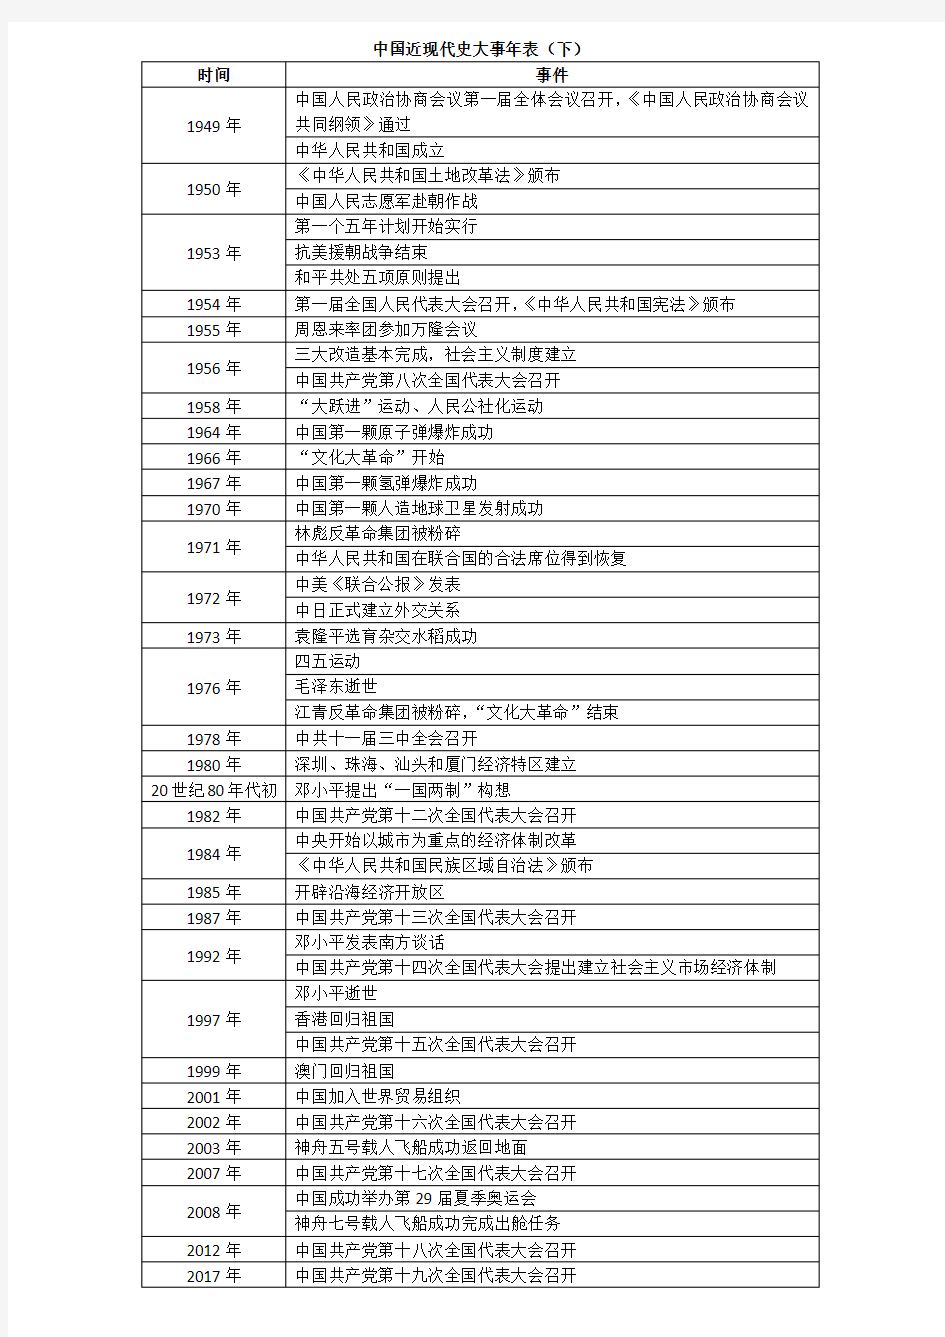 人教版八年级中国历史下册中国近现代史大事年表(下)